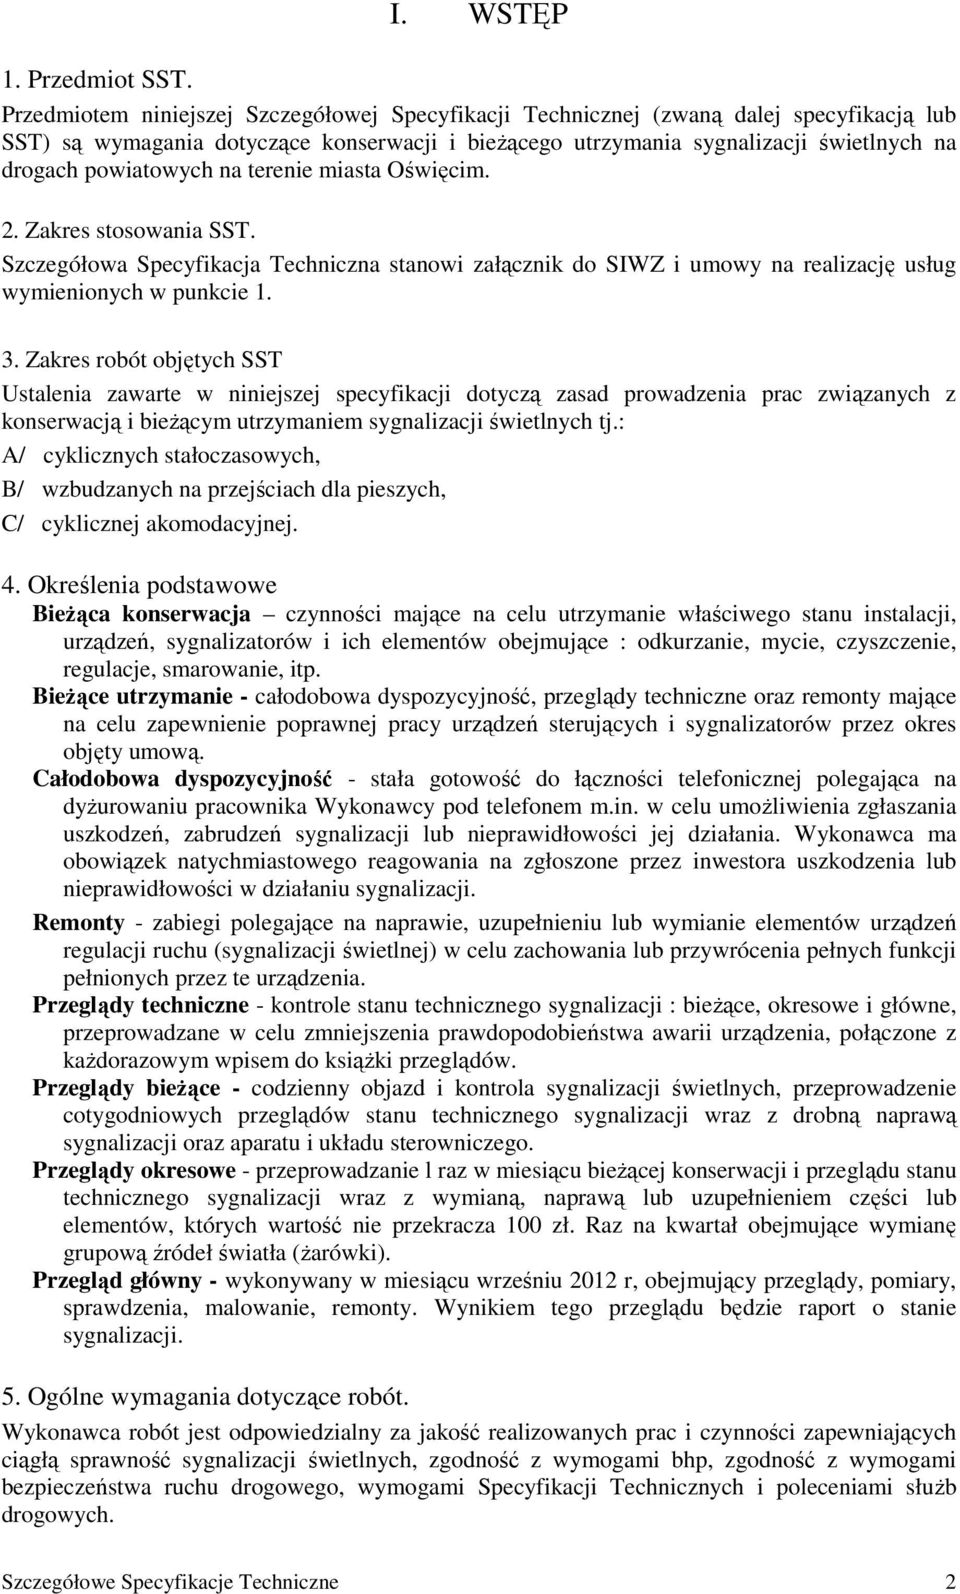 powiatowych na terenie miasta Oświęcim. 2. Zakres stosowania SST. Szczegółowa Specyfikacja Techniczna stanowi załącznik do SIWZ i umowy na realizację usług wymienionych w punkcie 1. 3.